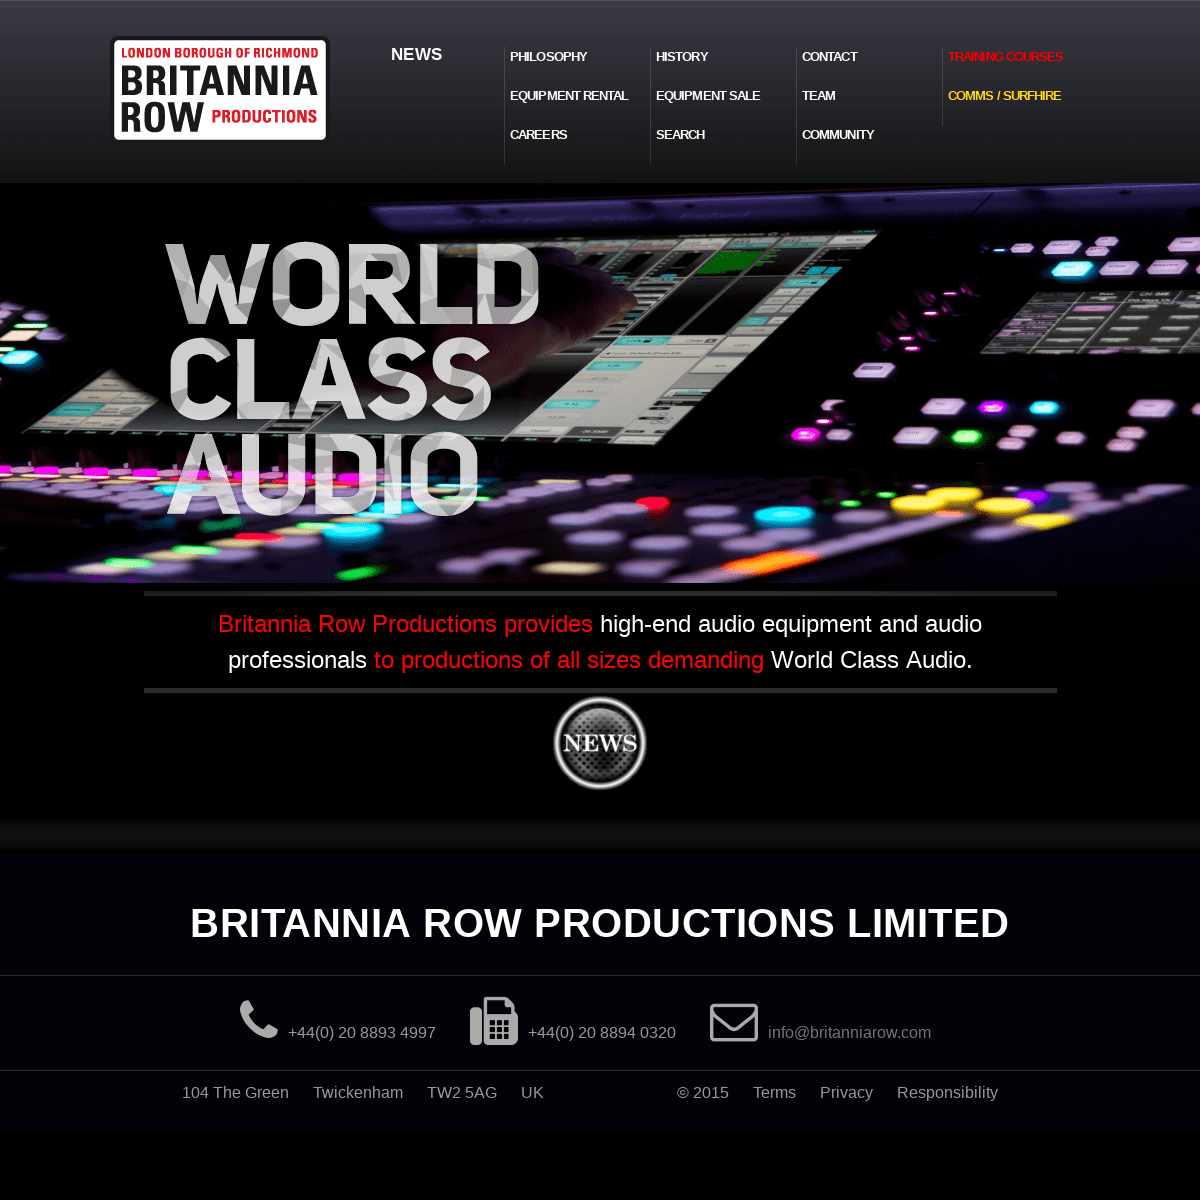 Audio equipment | Audio professionals | Britannia Row Productions Britannia Row Productions